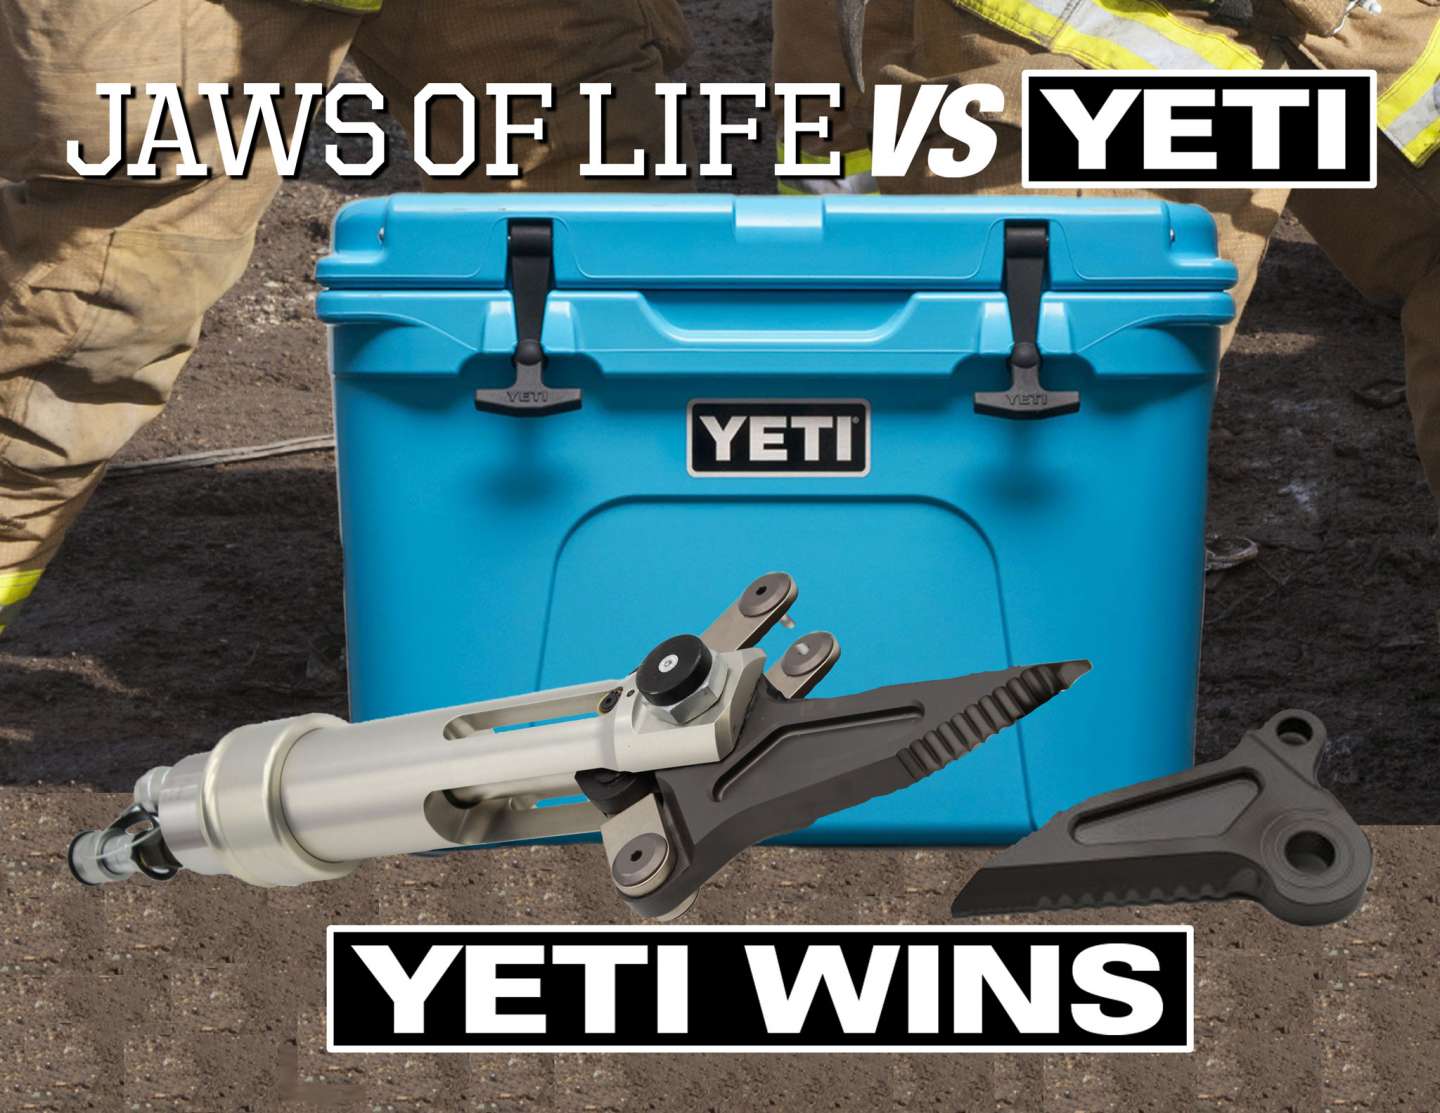 Yeti: Yeti Wins